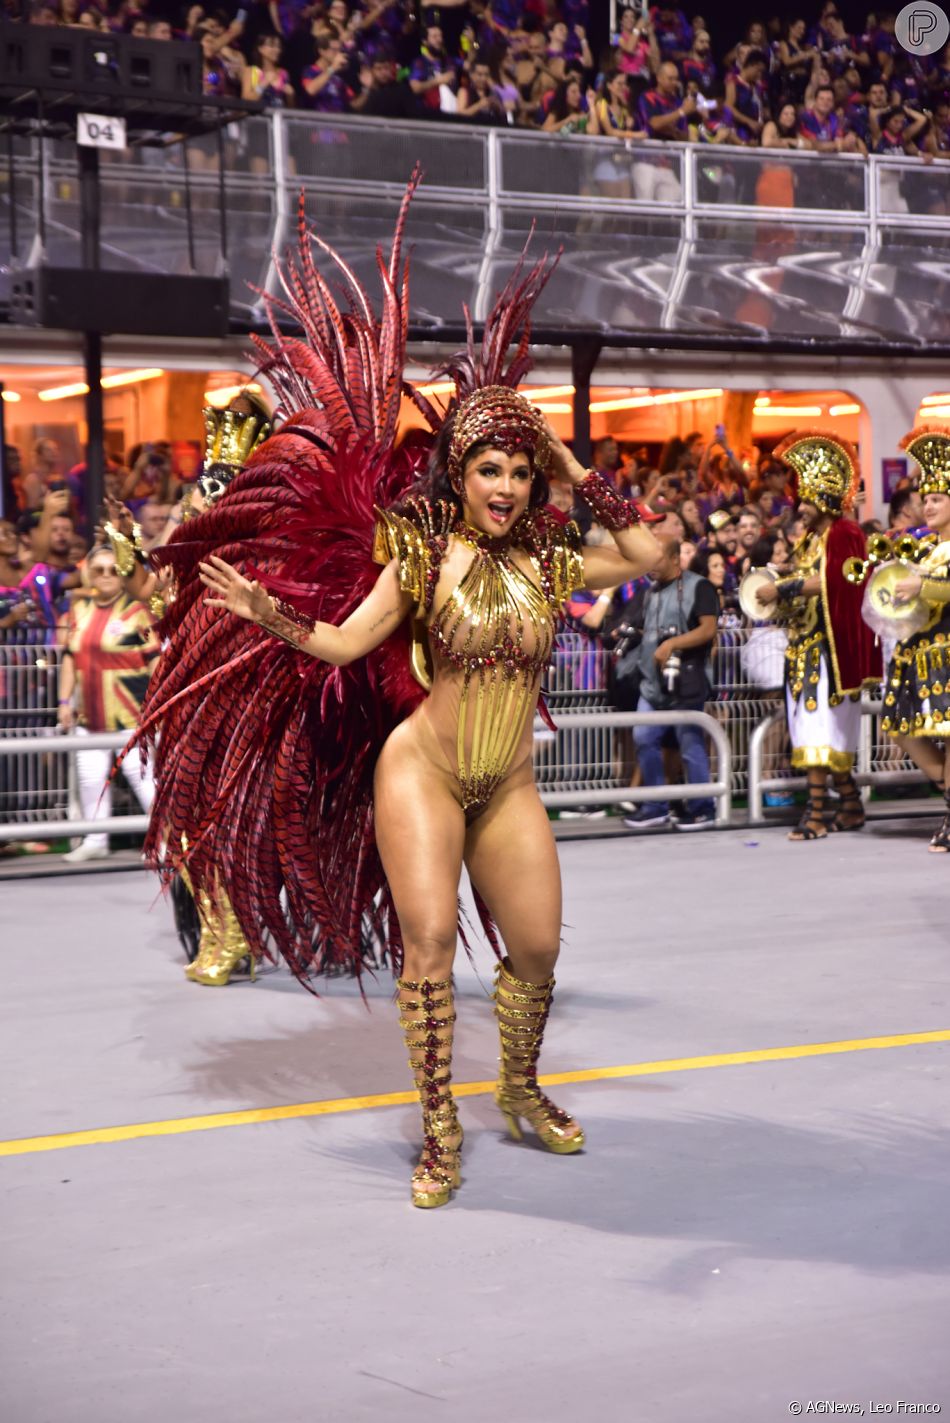 Mileide Mihaile destaca novo corpo com fantasia no desfile do carnaval